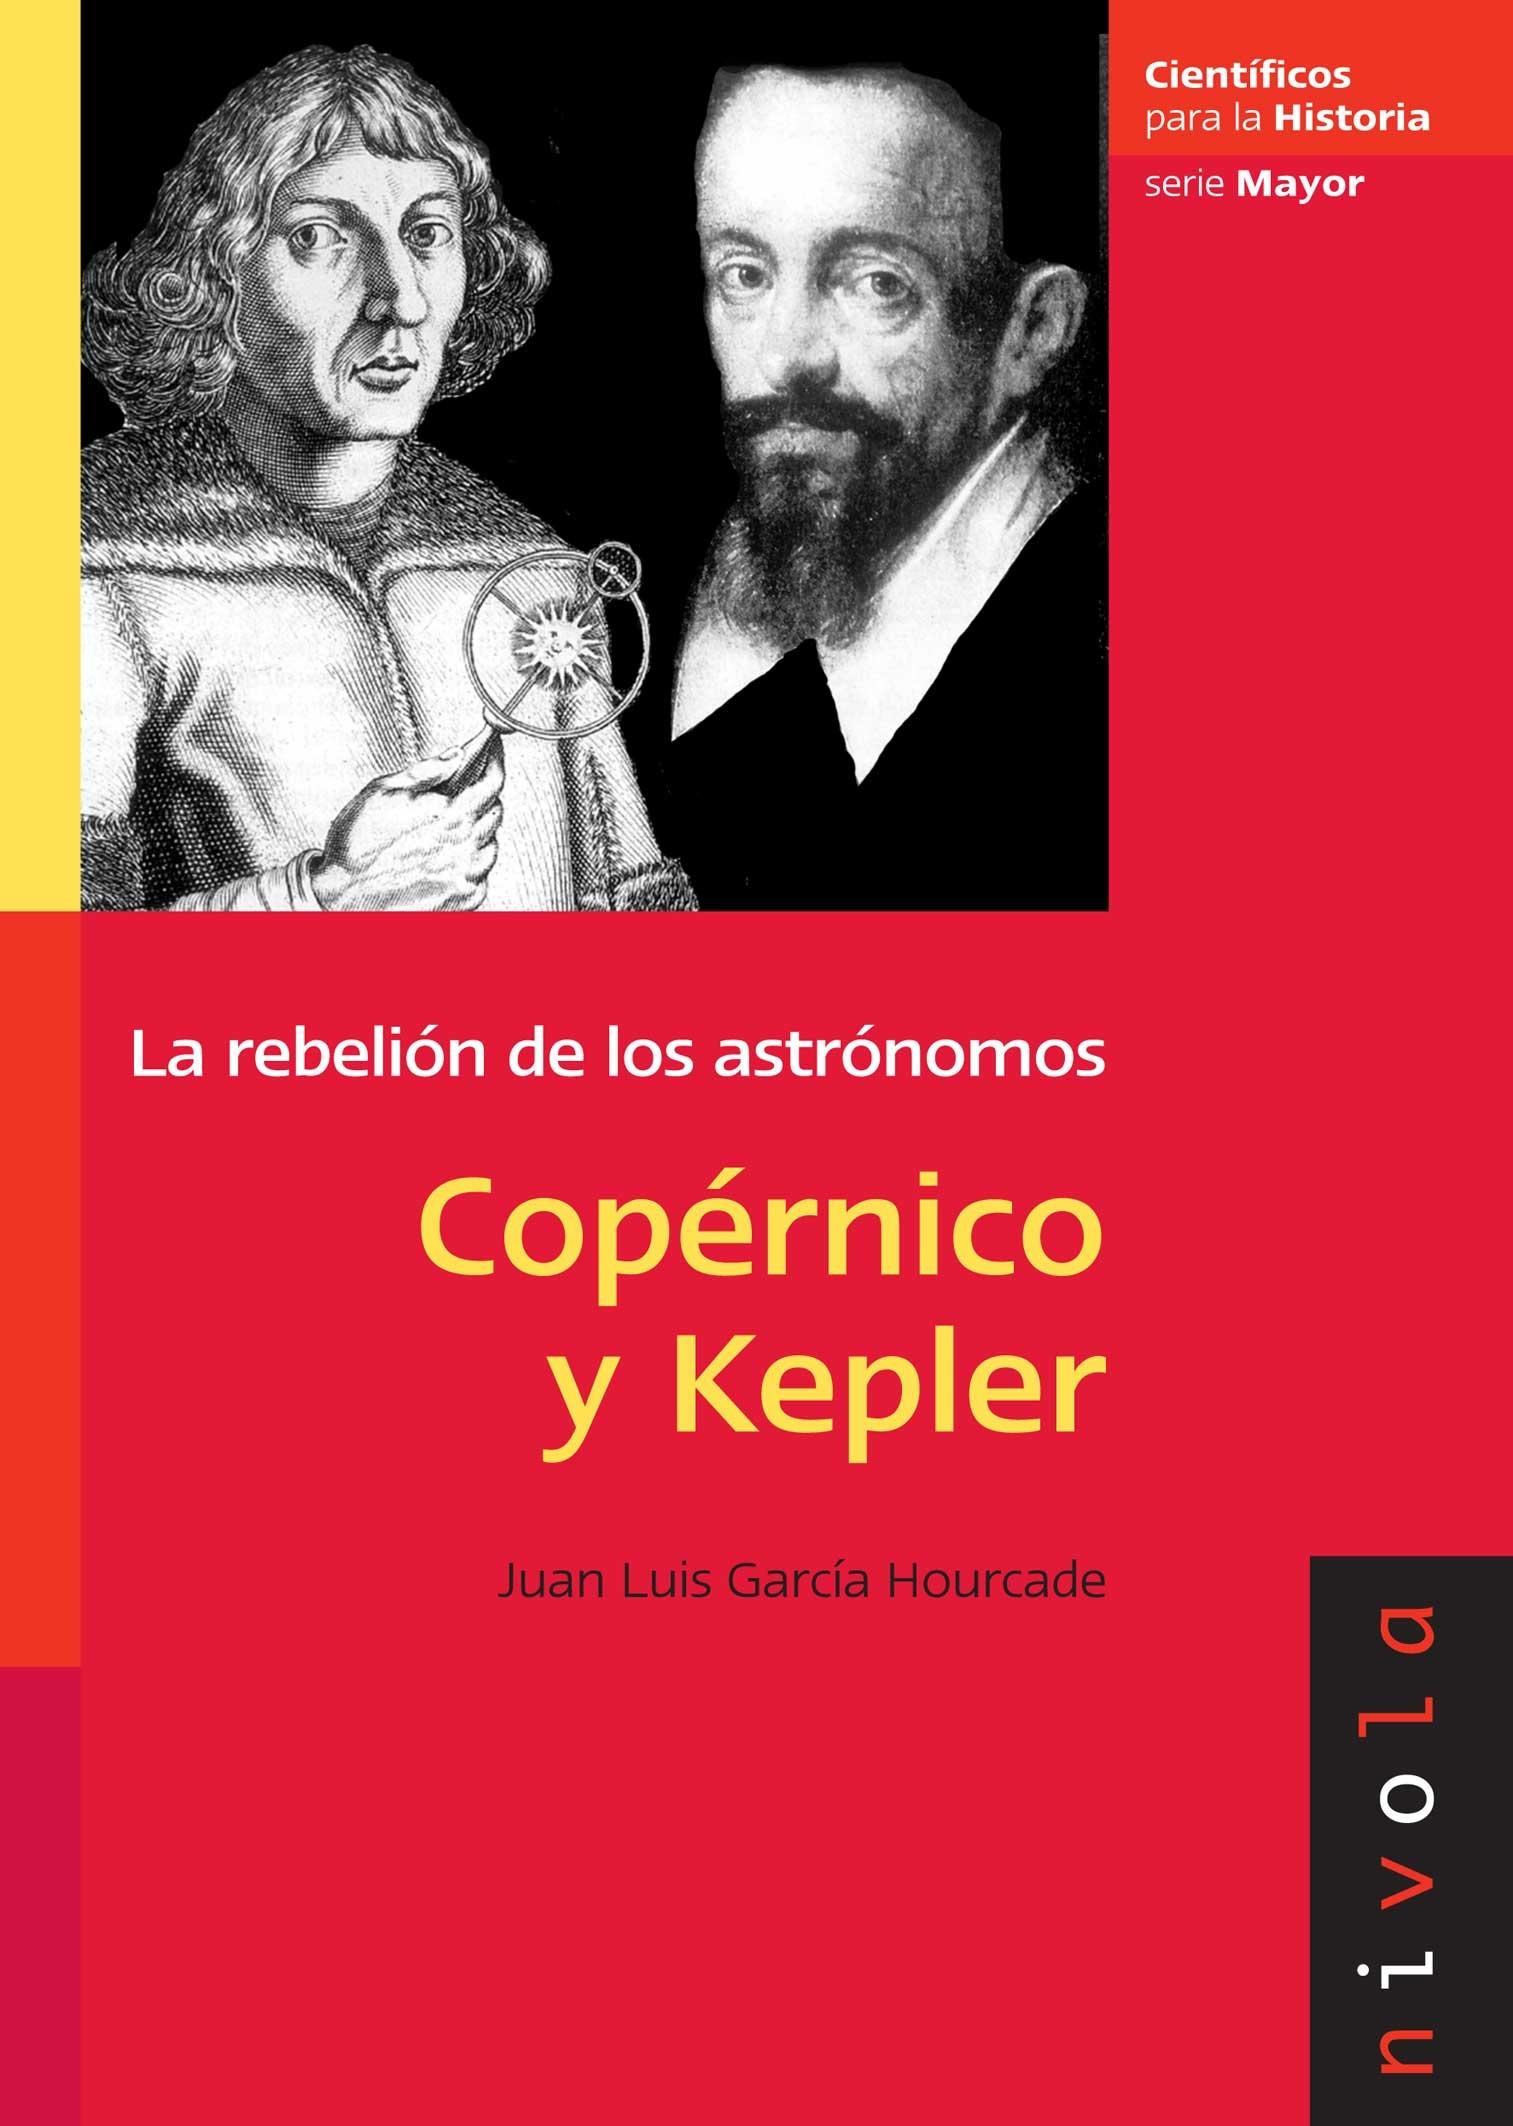 Copérnico y Kepler "La rebelión de los astrónomos". 